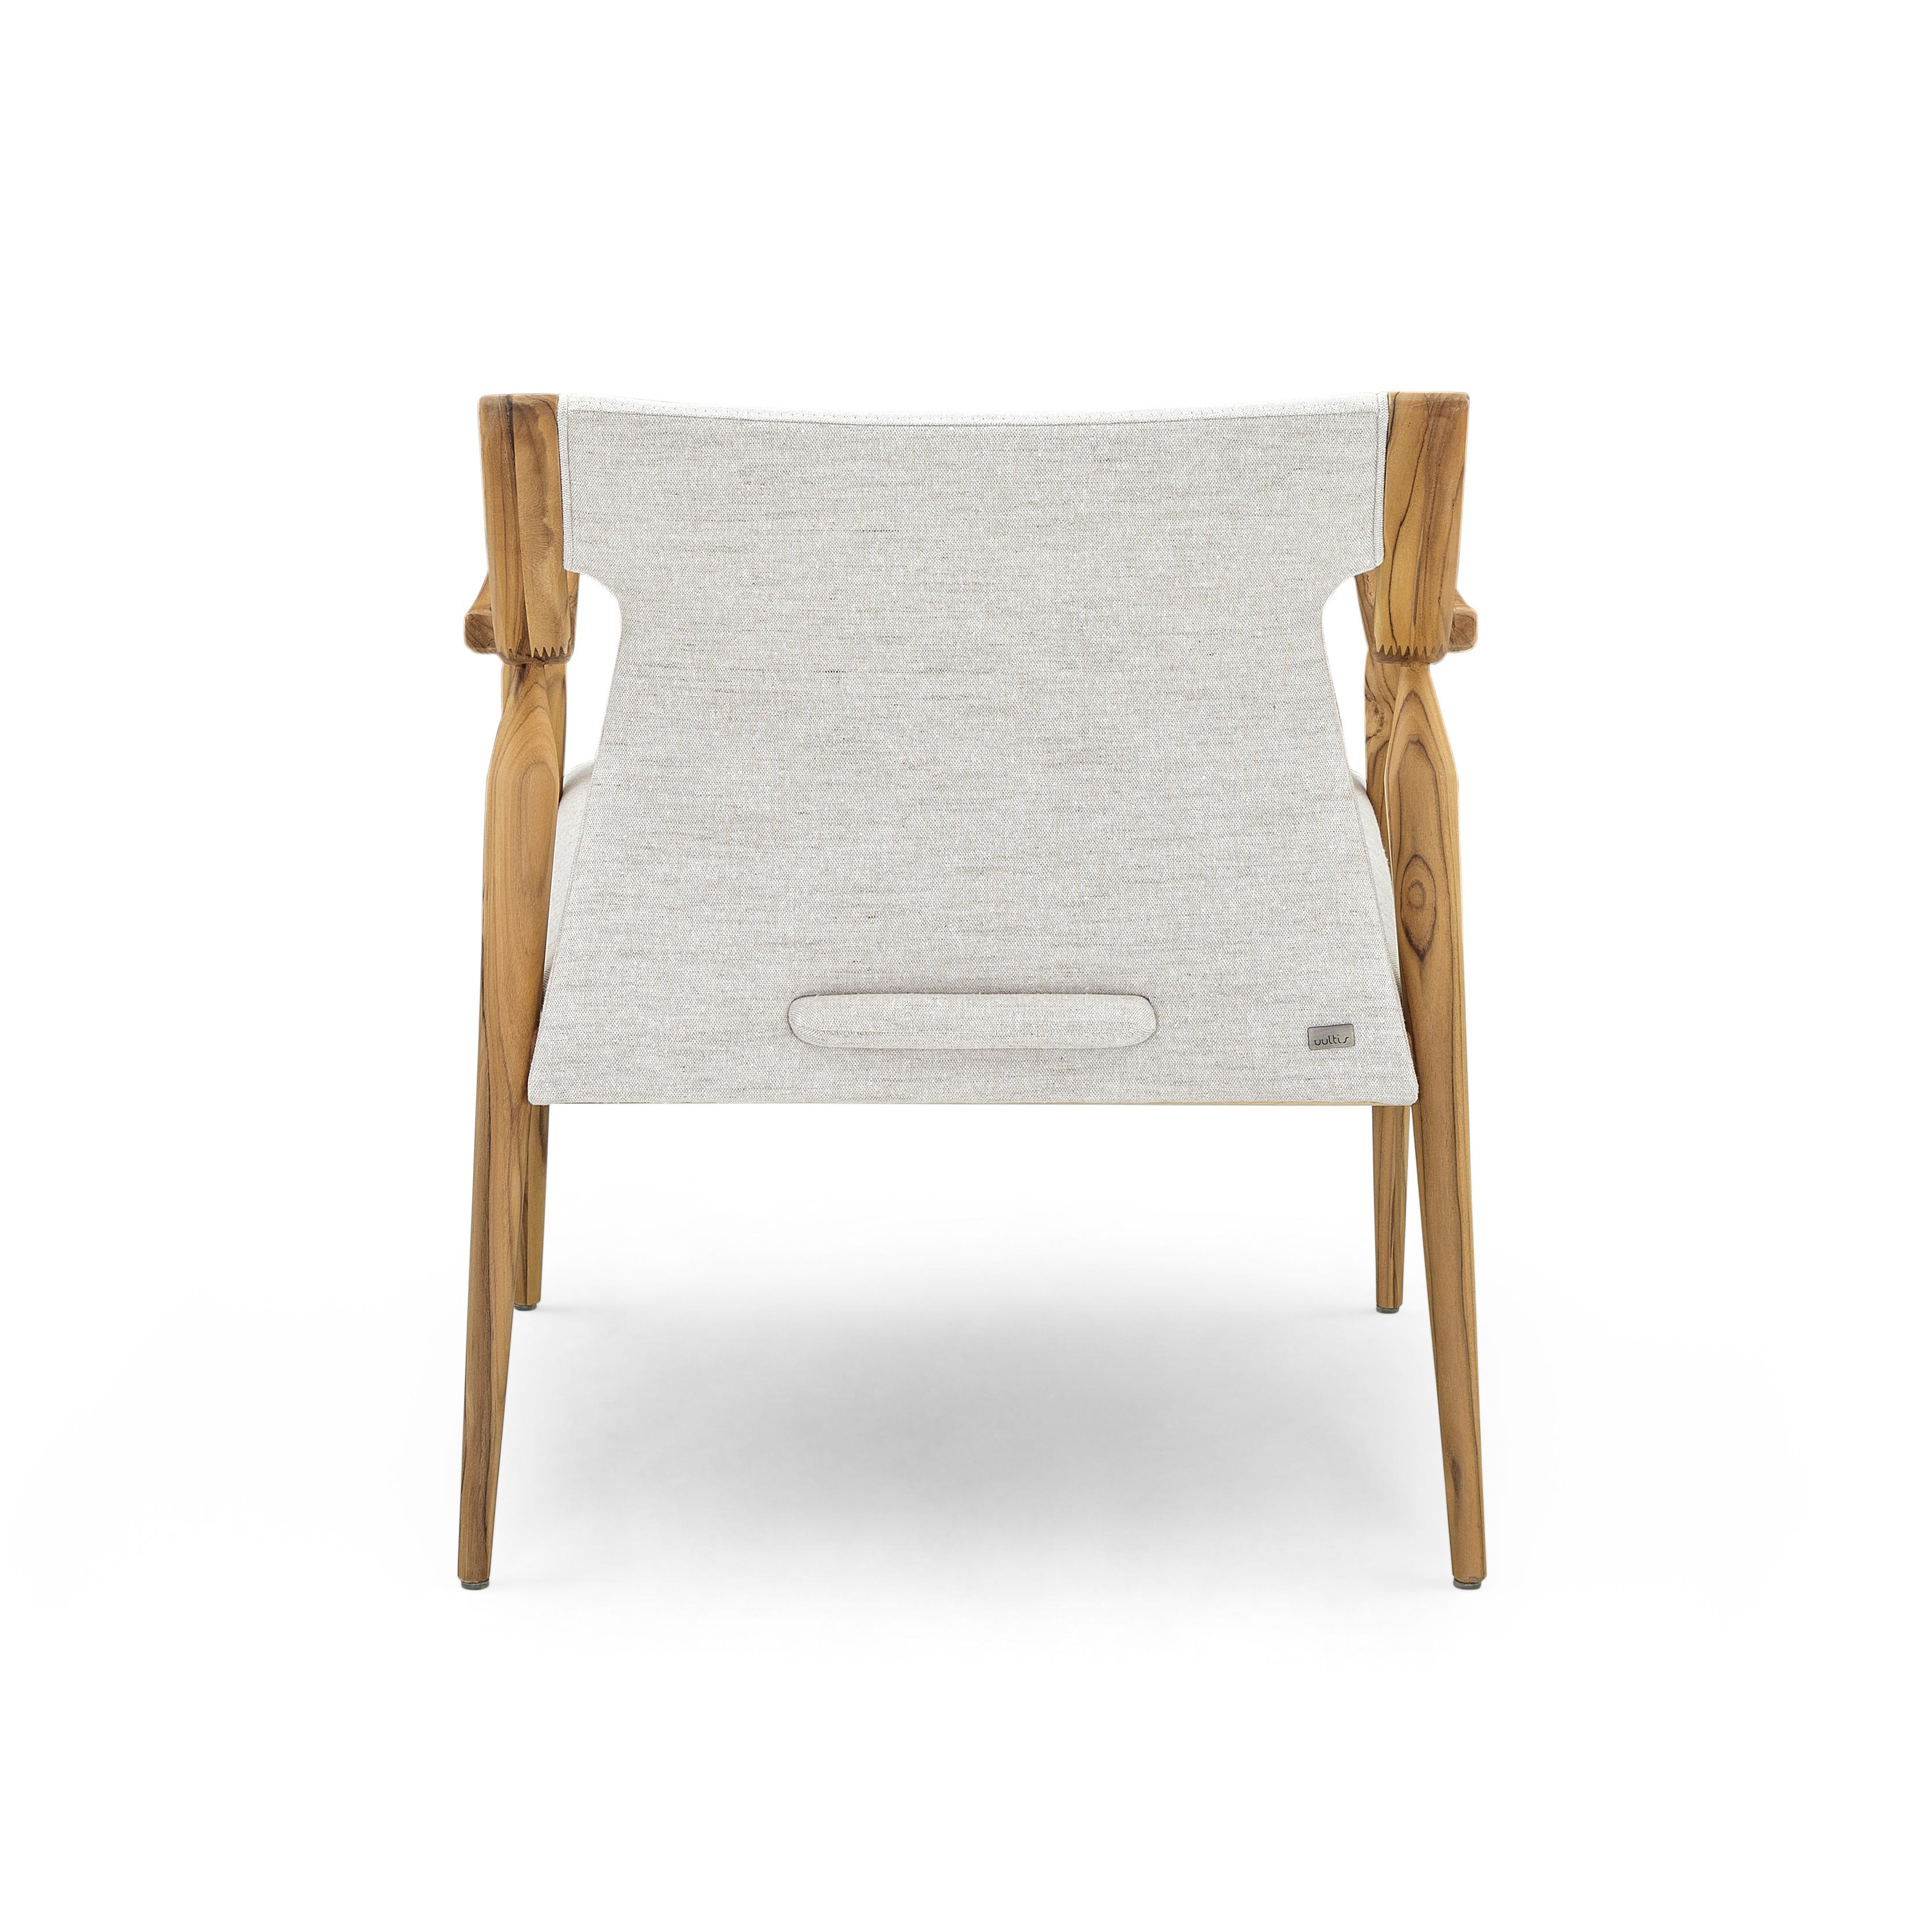 Le fauteuil Modern-Decor est un ajout accueillant à n'importe quelle pièce de votre décoration moderne avec ses bras incurvés et ses pieds en fuseau en finition teck, et un beau tissu blanc cassé et doux pour les coussins. Cette chaise moderne